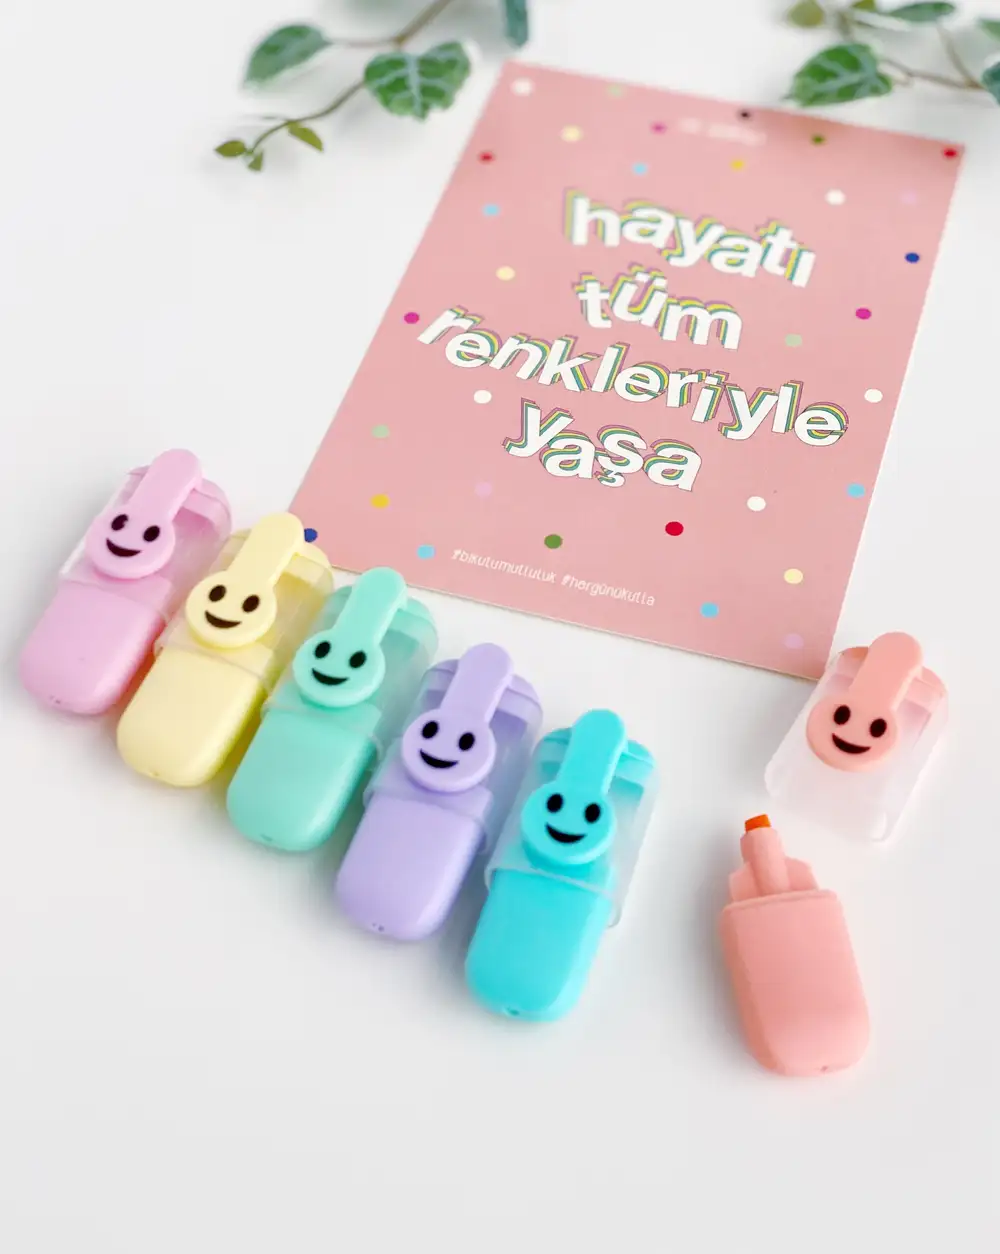 Gülen Yüz Ve Hayatı Rengarenk Yaşa Motto Kartı Fosforlu Kalemler 6lı Mini Boy Pastel Renkler